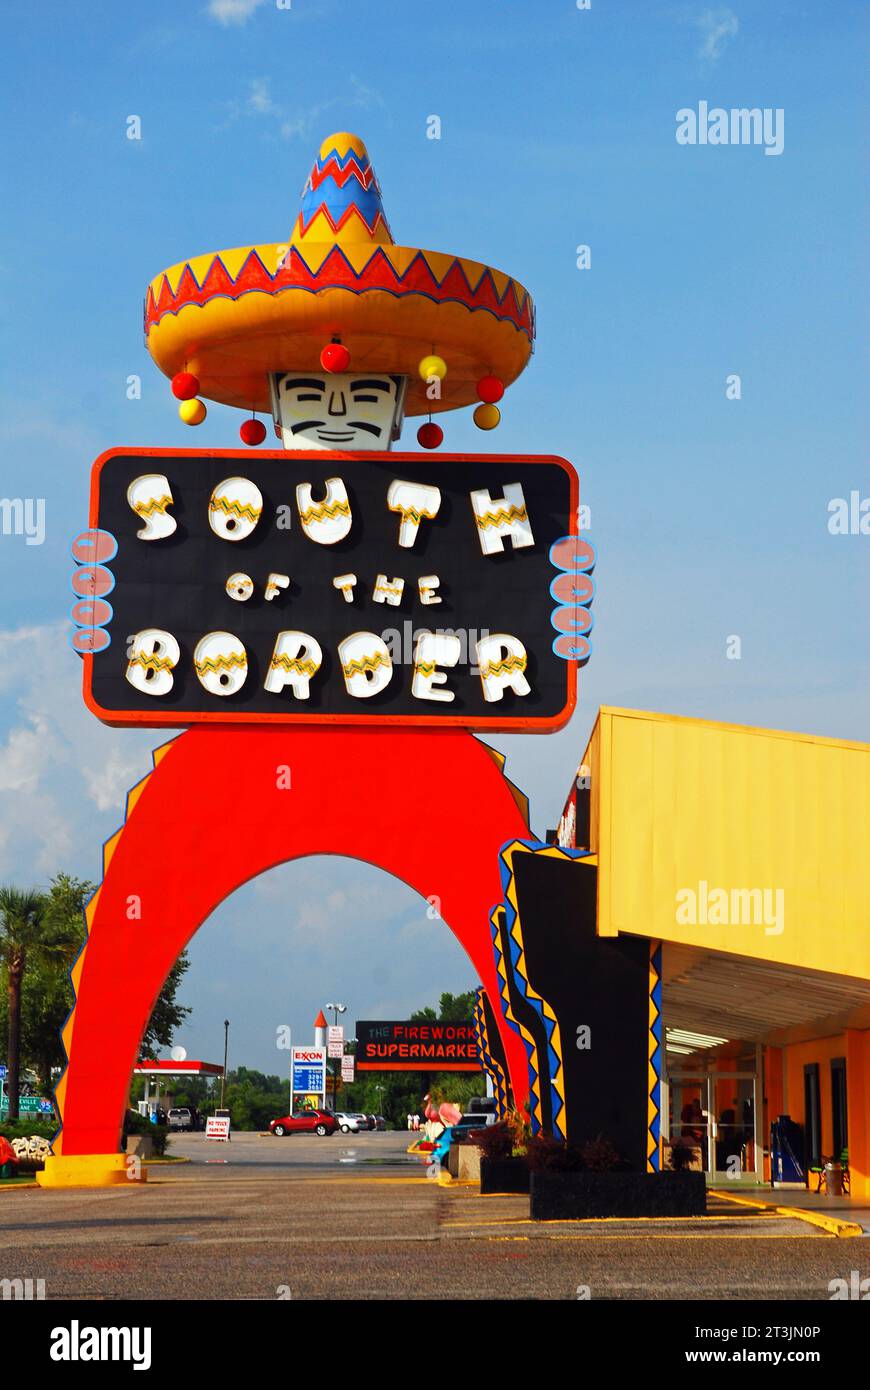 South of the Border, une attraction controversée en bordure de route en Caroline du Sud Banque D'Images